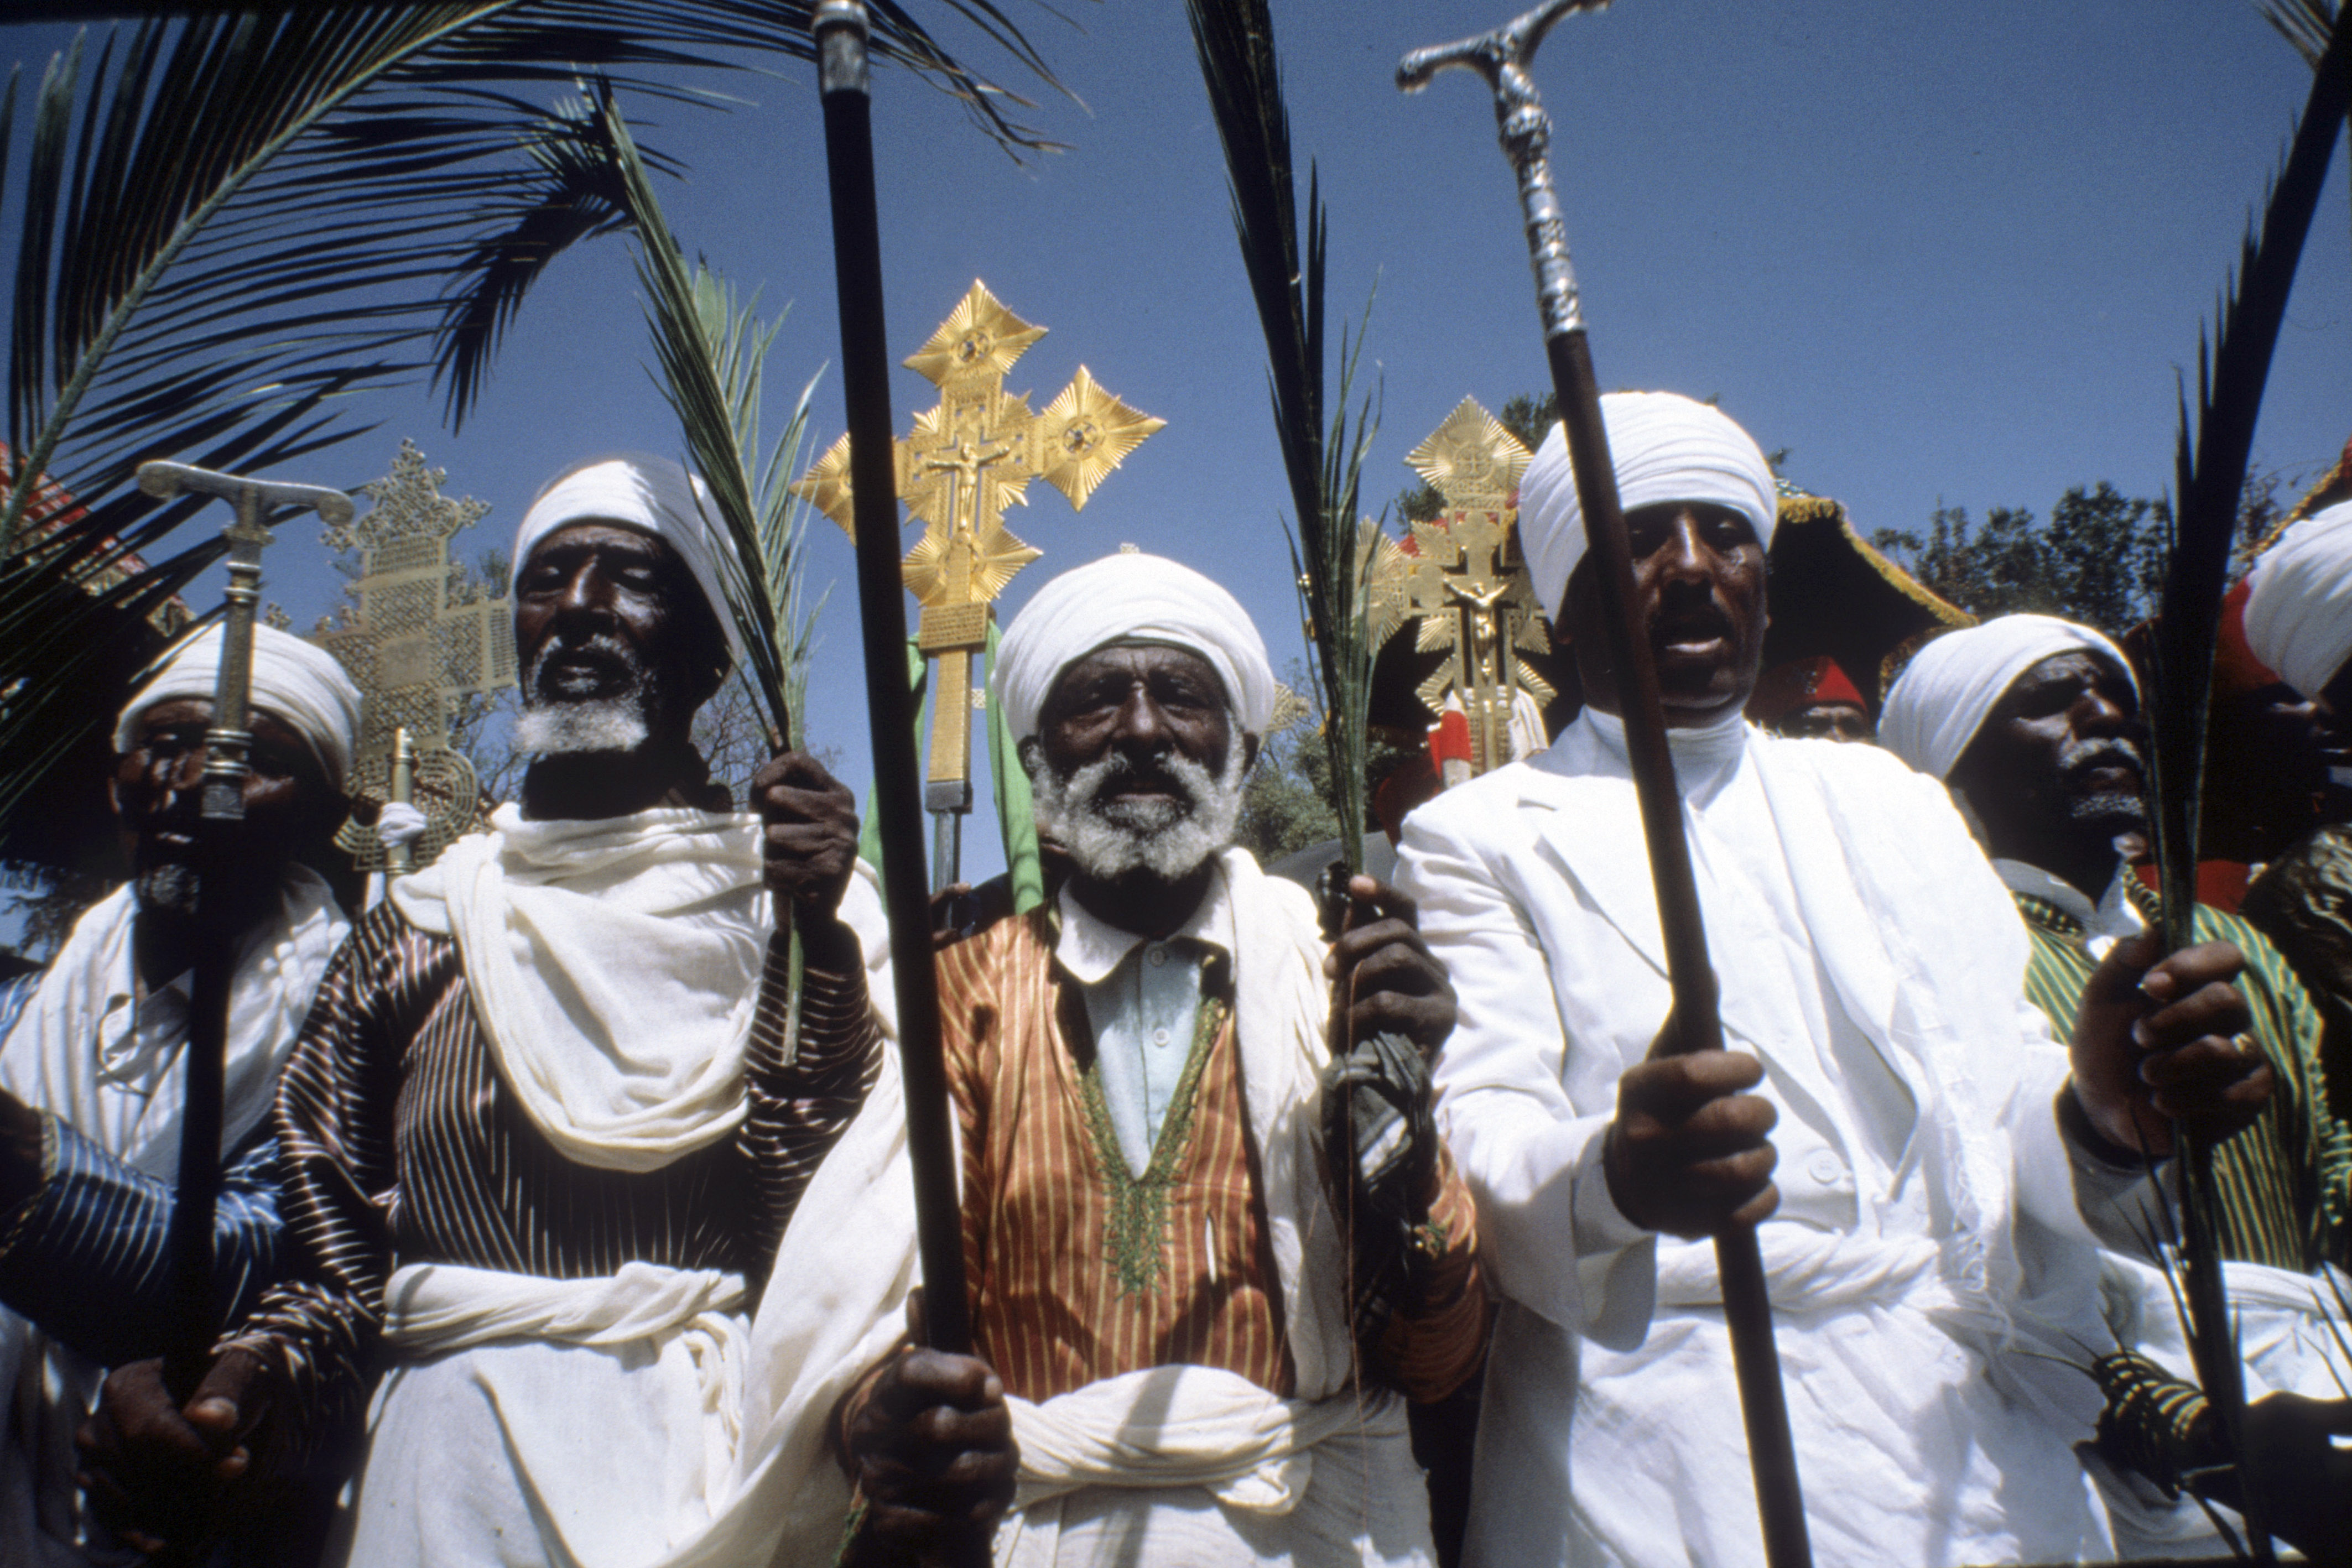 Il cristianesimo in Etiopia ha radici antichissime. Nella foto: preti delle chiesi rupestri di Lalibela, ancora oggi luogo di devozione e pellegrinaggio